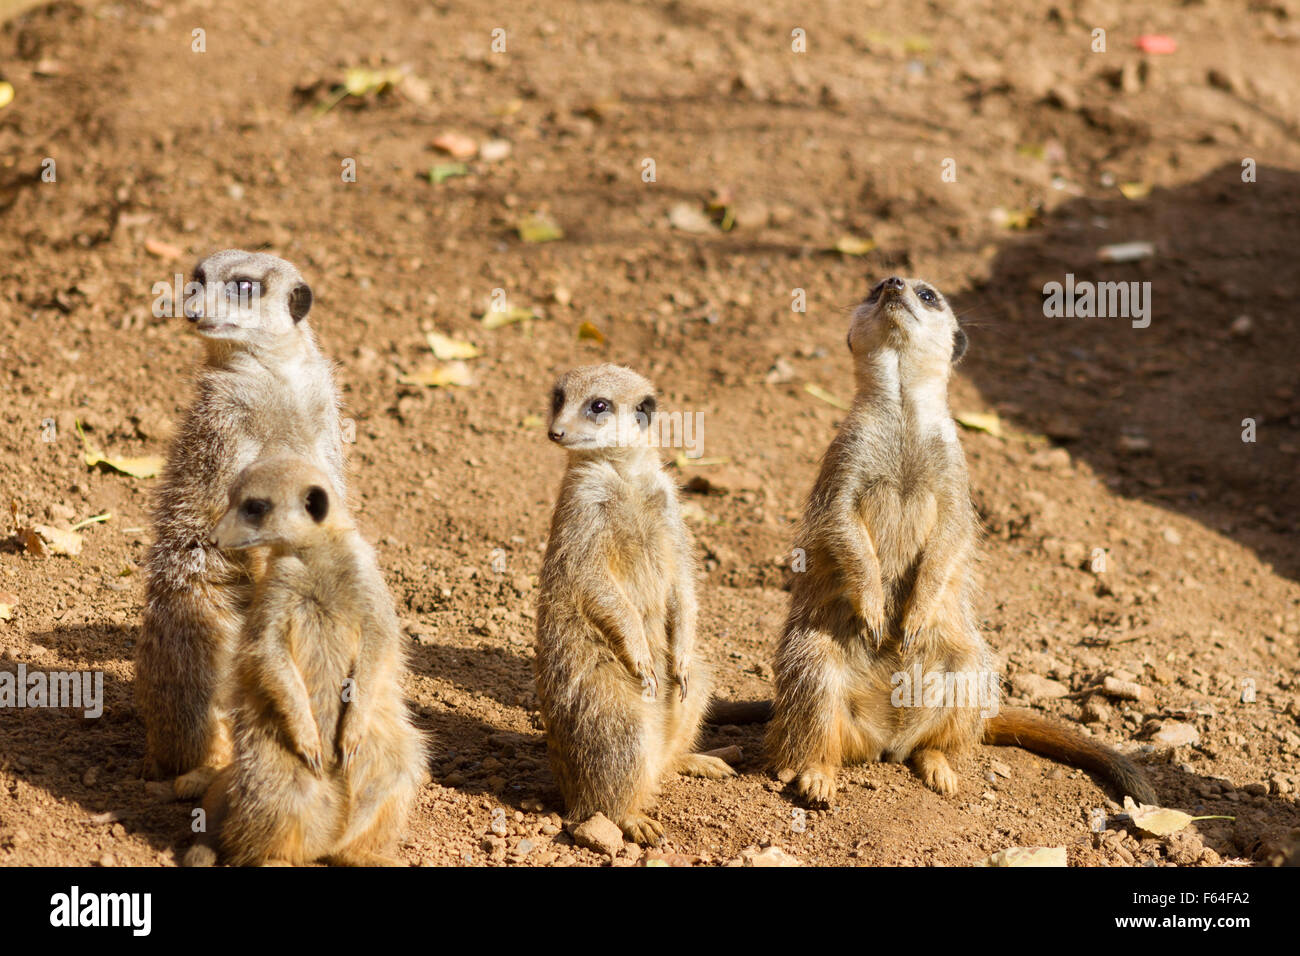 4 meerkats on the lookout for predators Stock Photo